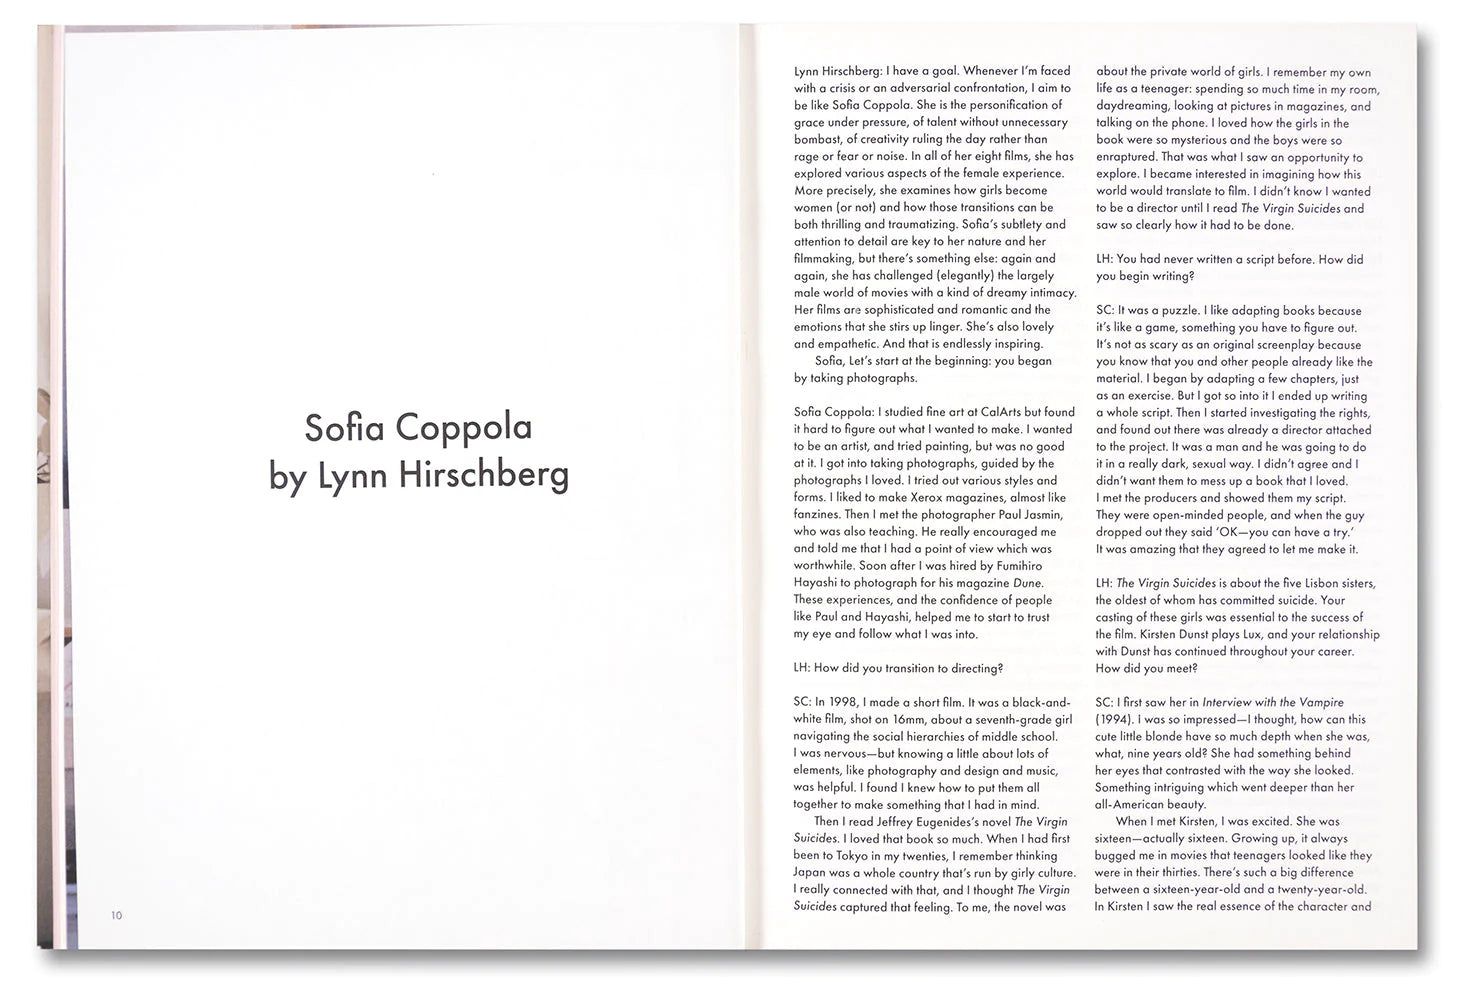 Sofia Coppola - Archive Soft Cover Book – Domestic Fantasies